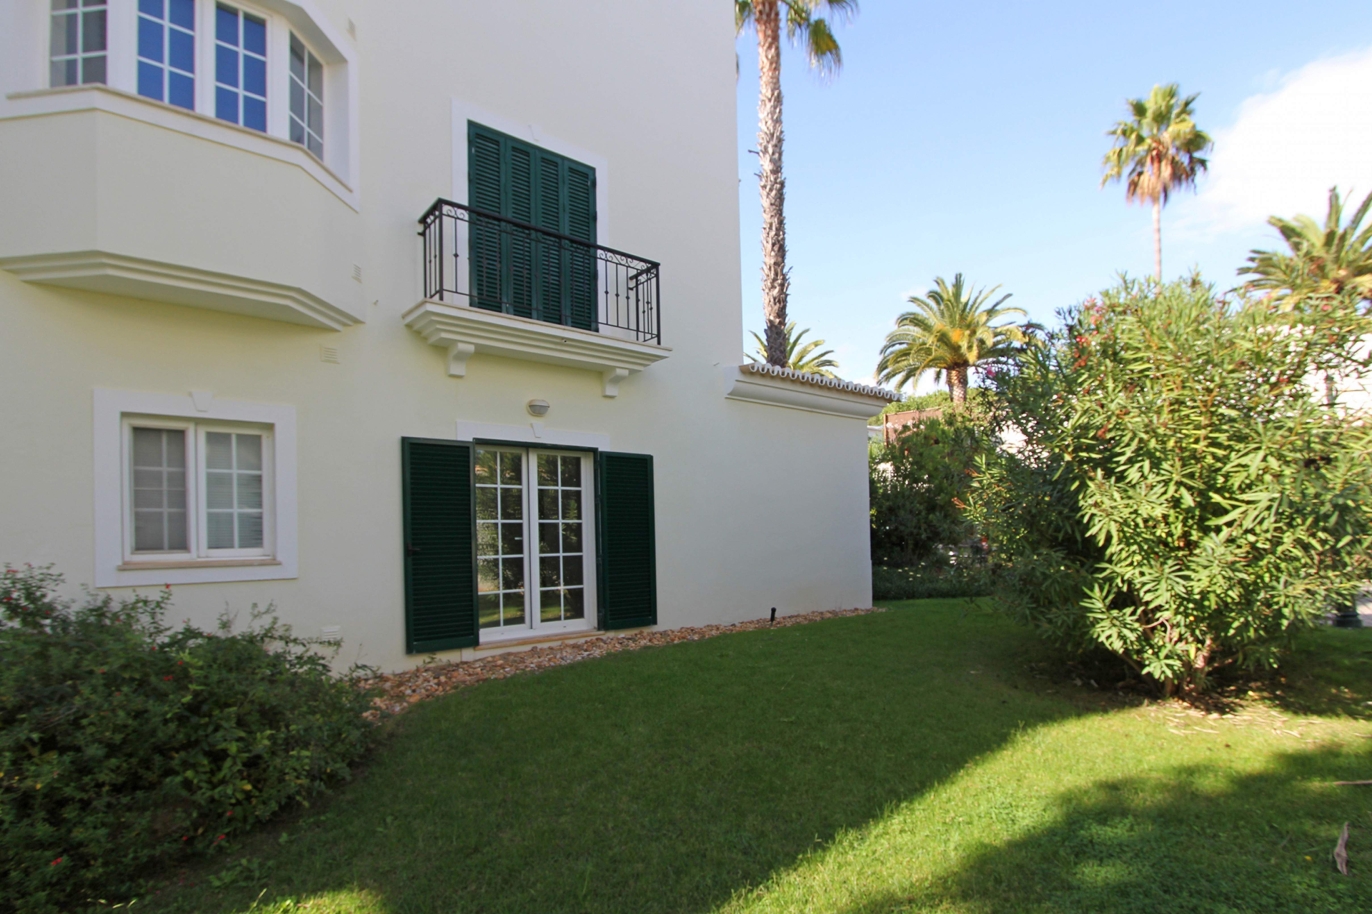 Apartamento en venta, cerca de playa, Vale do Lobo, Algarve, Portugal_120386